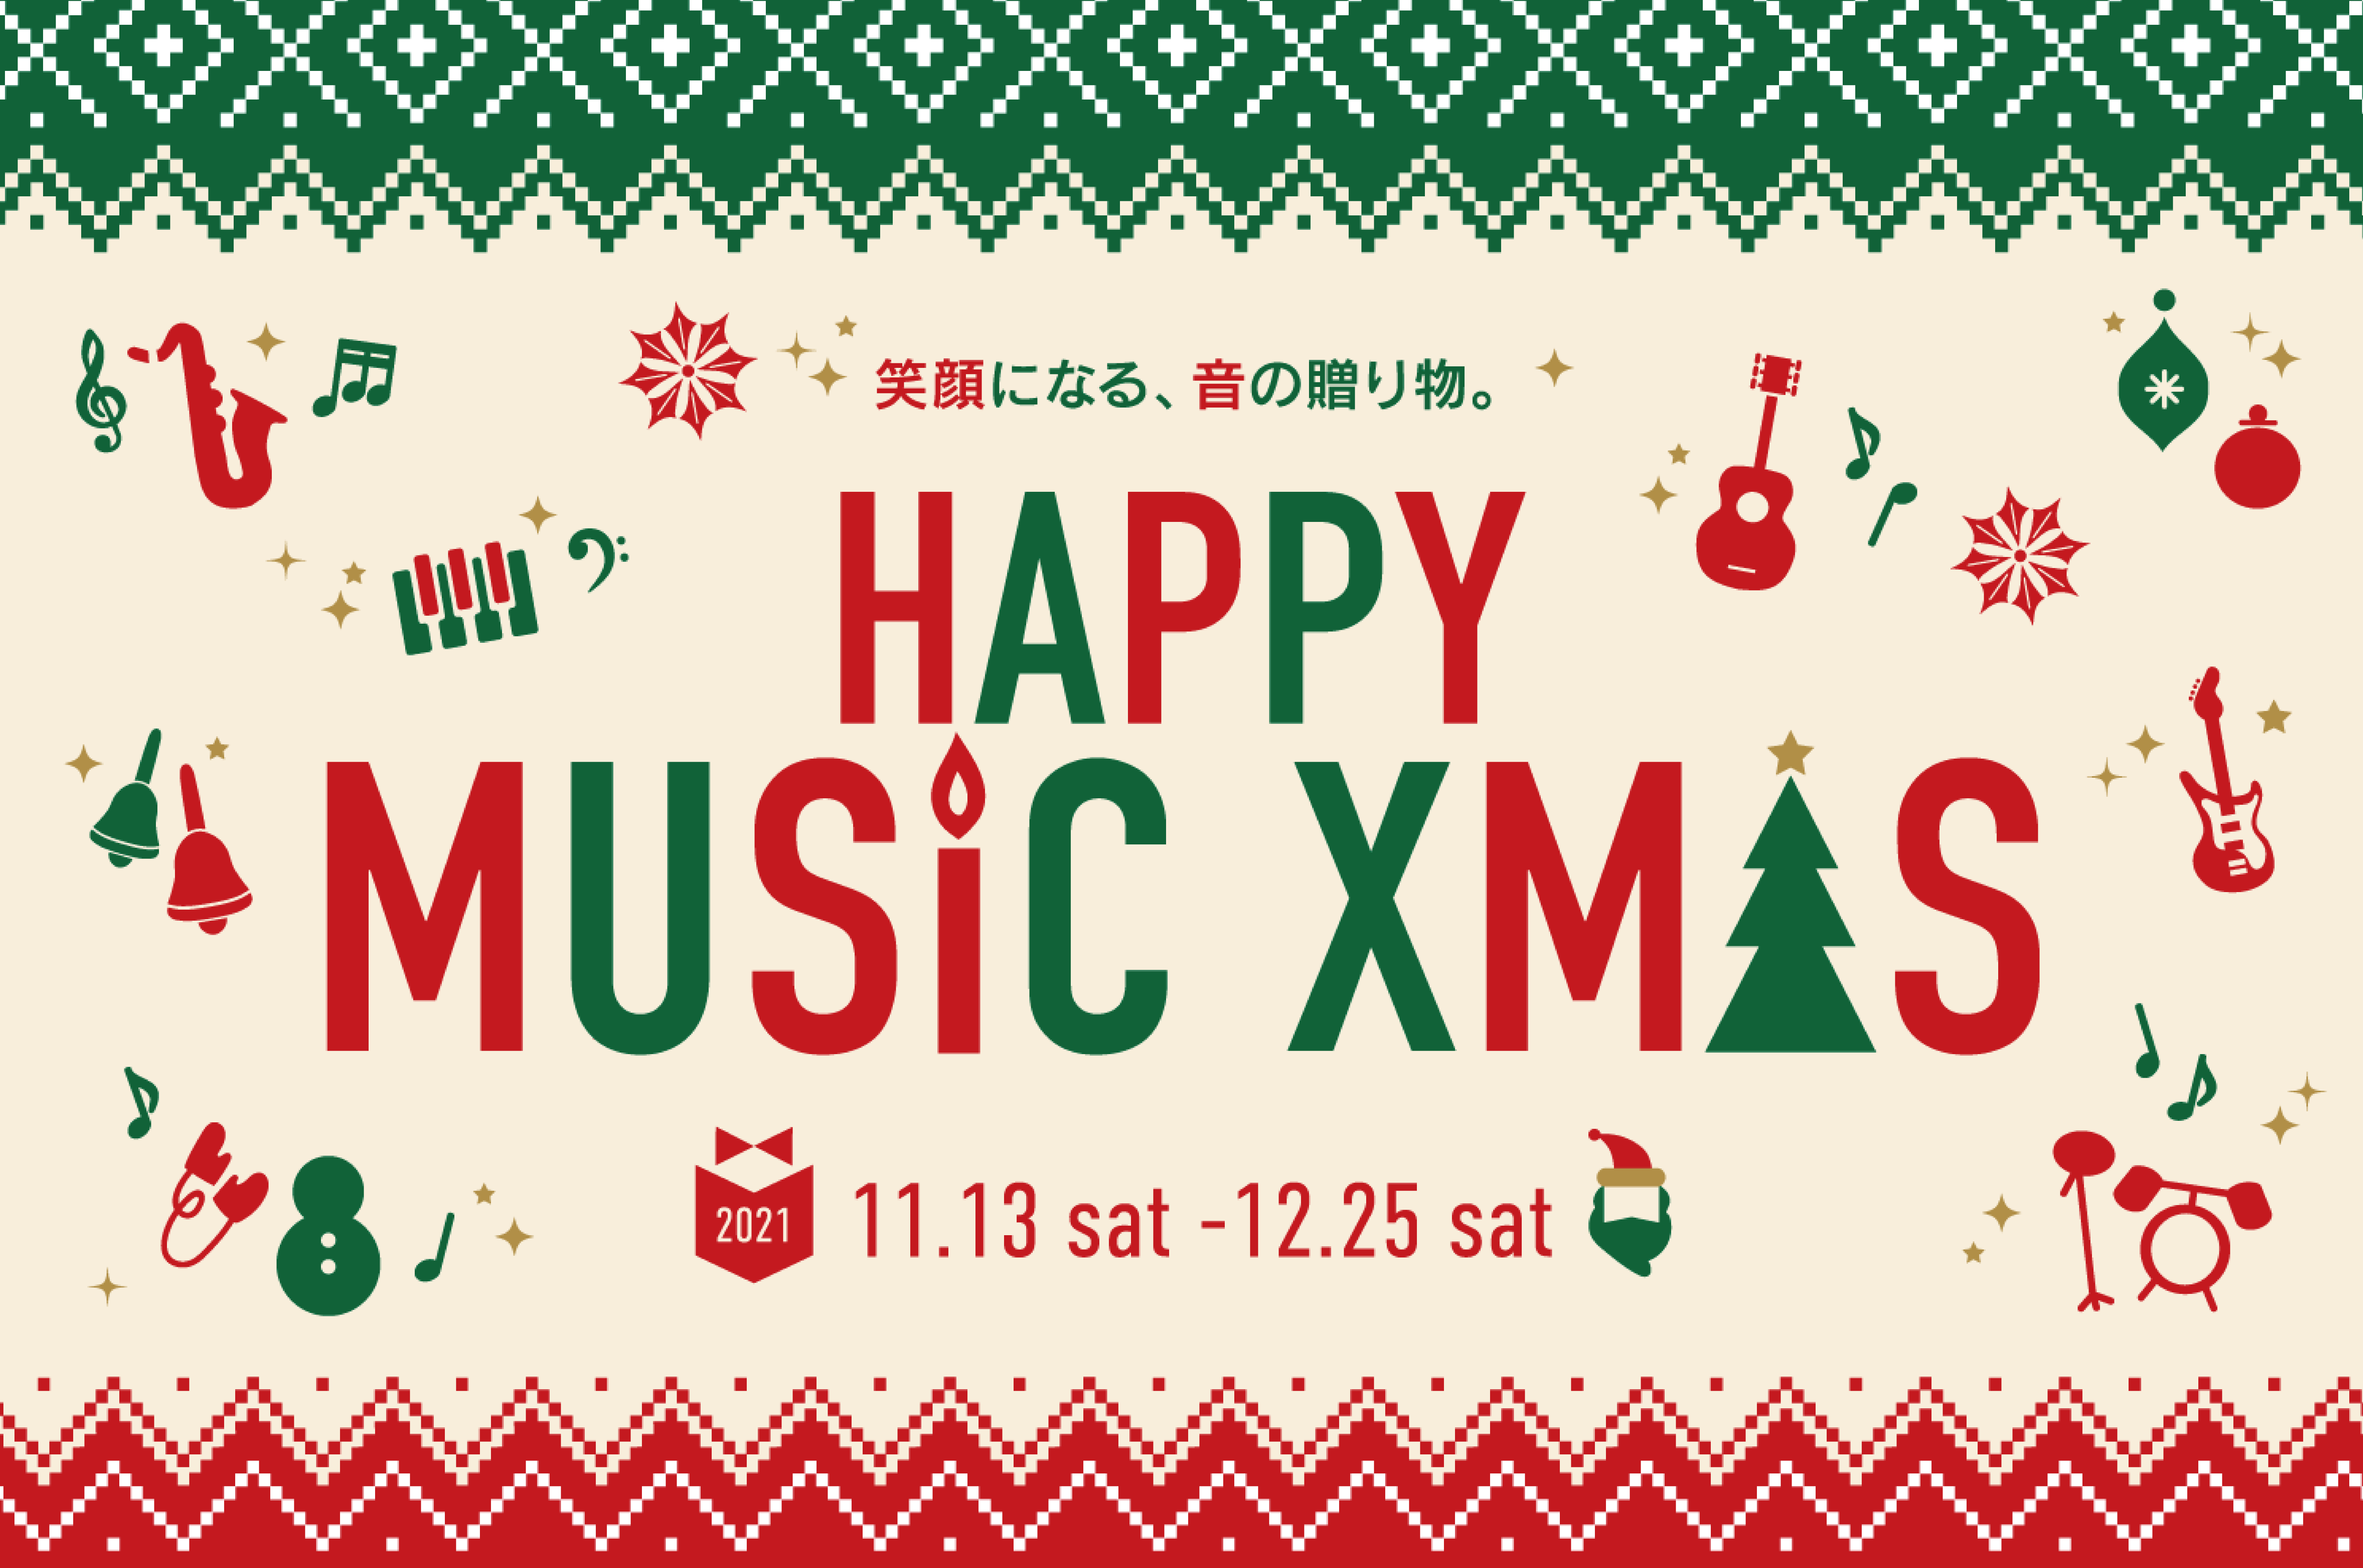 *今年のクリスマスプレゼントに楽器はいかがですか？ いつも島村楽器をご利用いただき、誠にありがとうございます。]]2021年のクリスマスプレゼントはお決まりでしょうか？こちらのページではプレゼントにおすすめの商品をカテゴリ別にまとめさせていただいていますので、ぜひご参考にしてみてください！ ===z […]